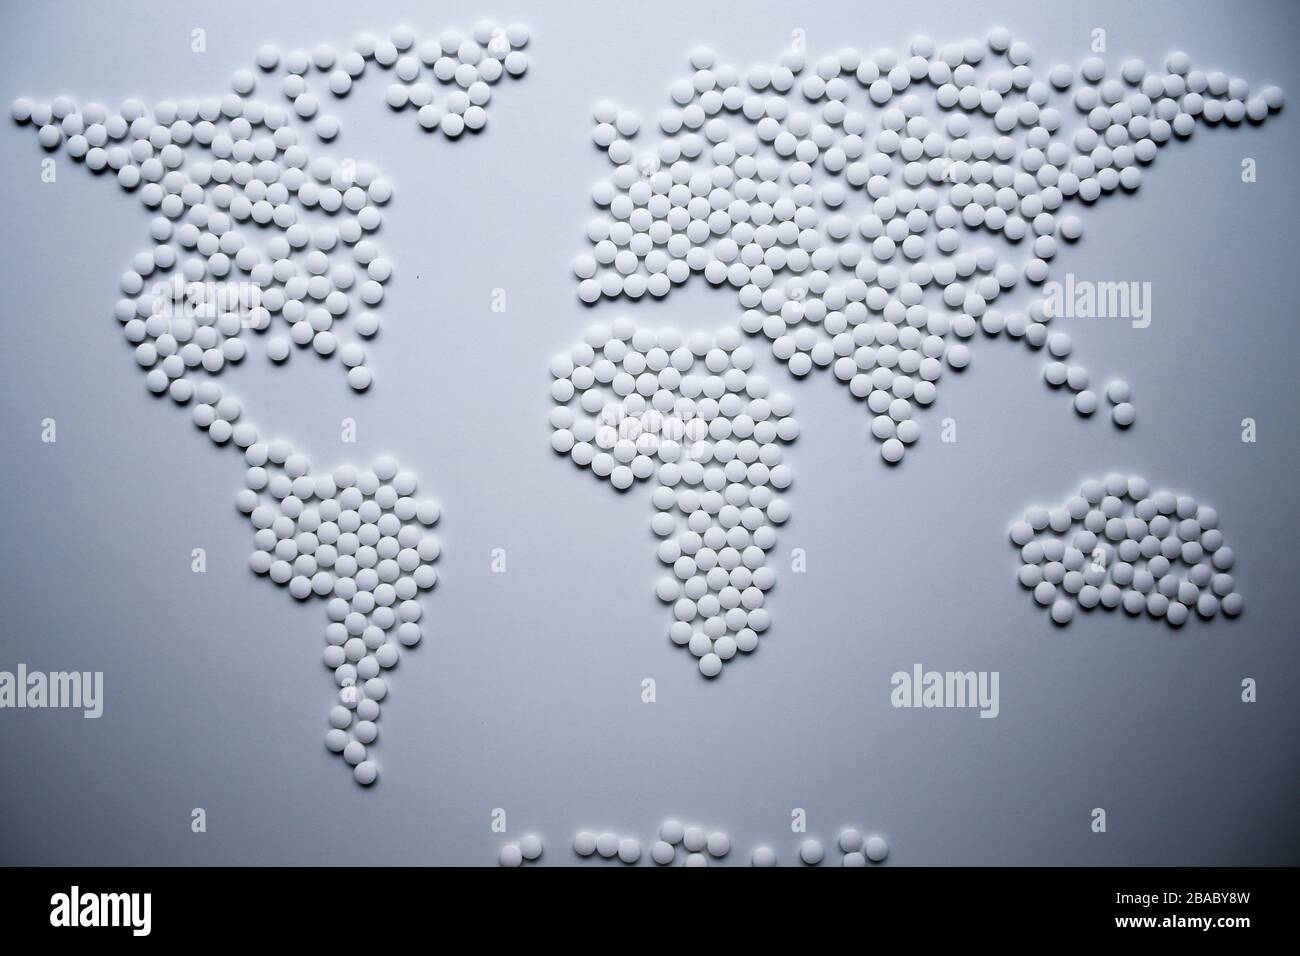 El concepto de mapa de salud mundial creado a partir de tabletas blancas necesita urgentemente para curar el mundo entero de virus e infecciones que amenazan a la población entera Foto de stock